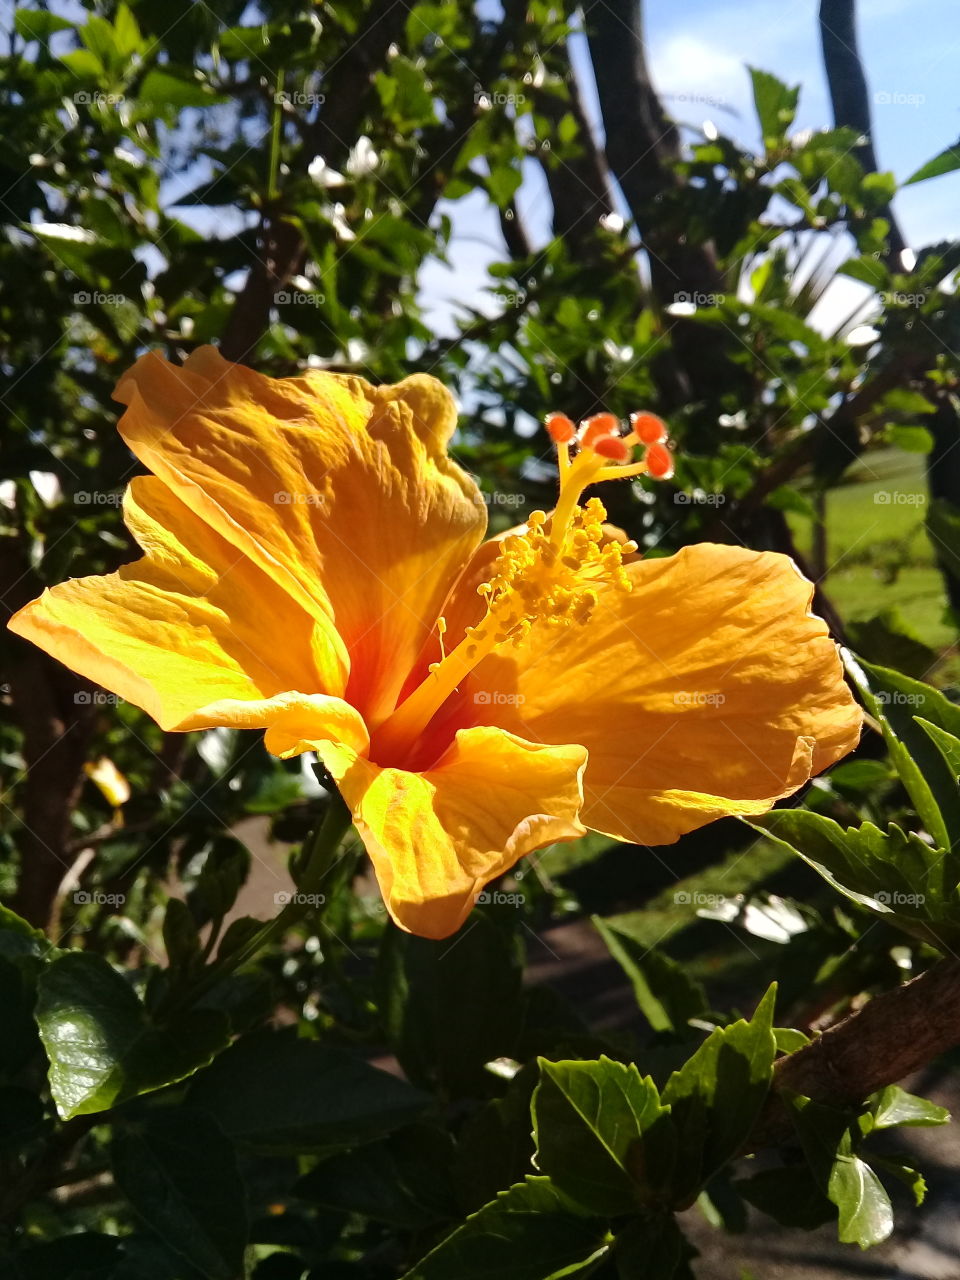 #Flowers -
A imagem do #hibisco amarelo embelezando a timeline. Viva as #flores!
🌺
#flor #paisagem #natureza #photography 
#FotografiaÉnossoHobby